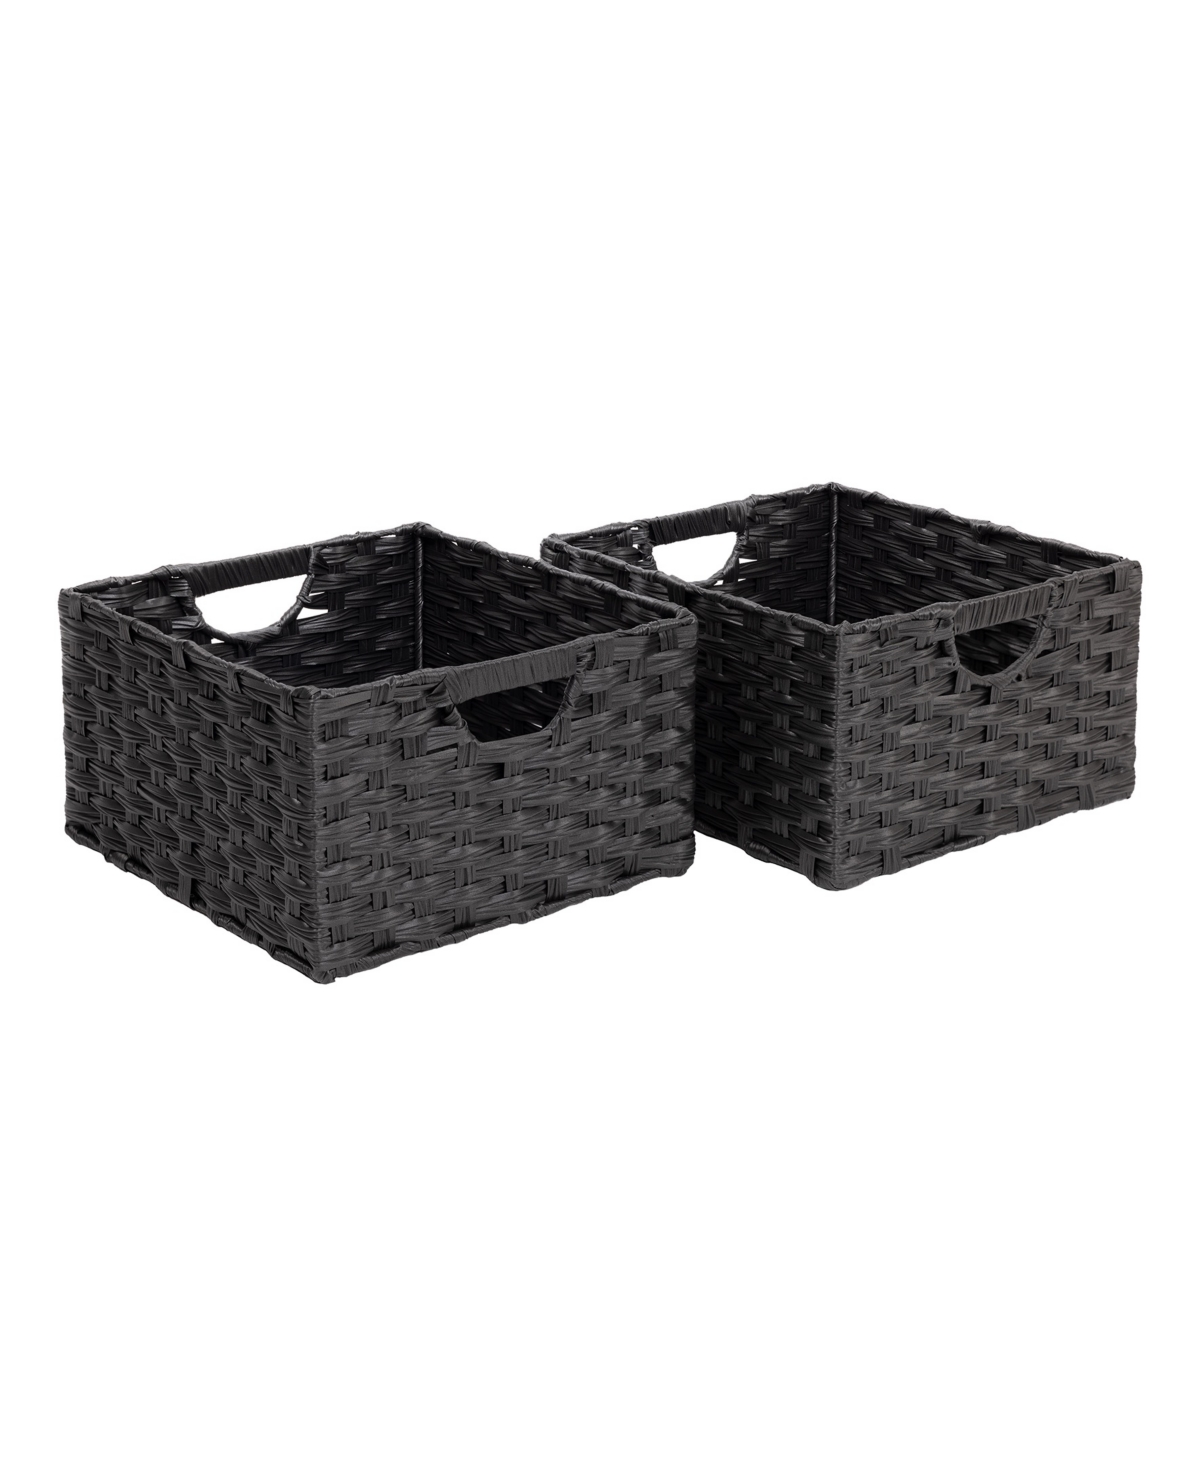 Handwoven Basket 2-Pack - Black